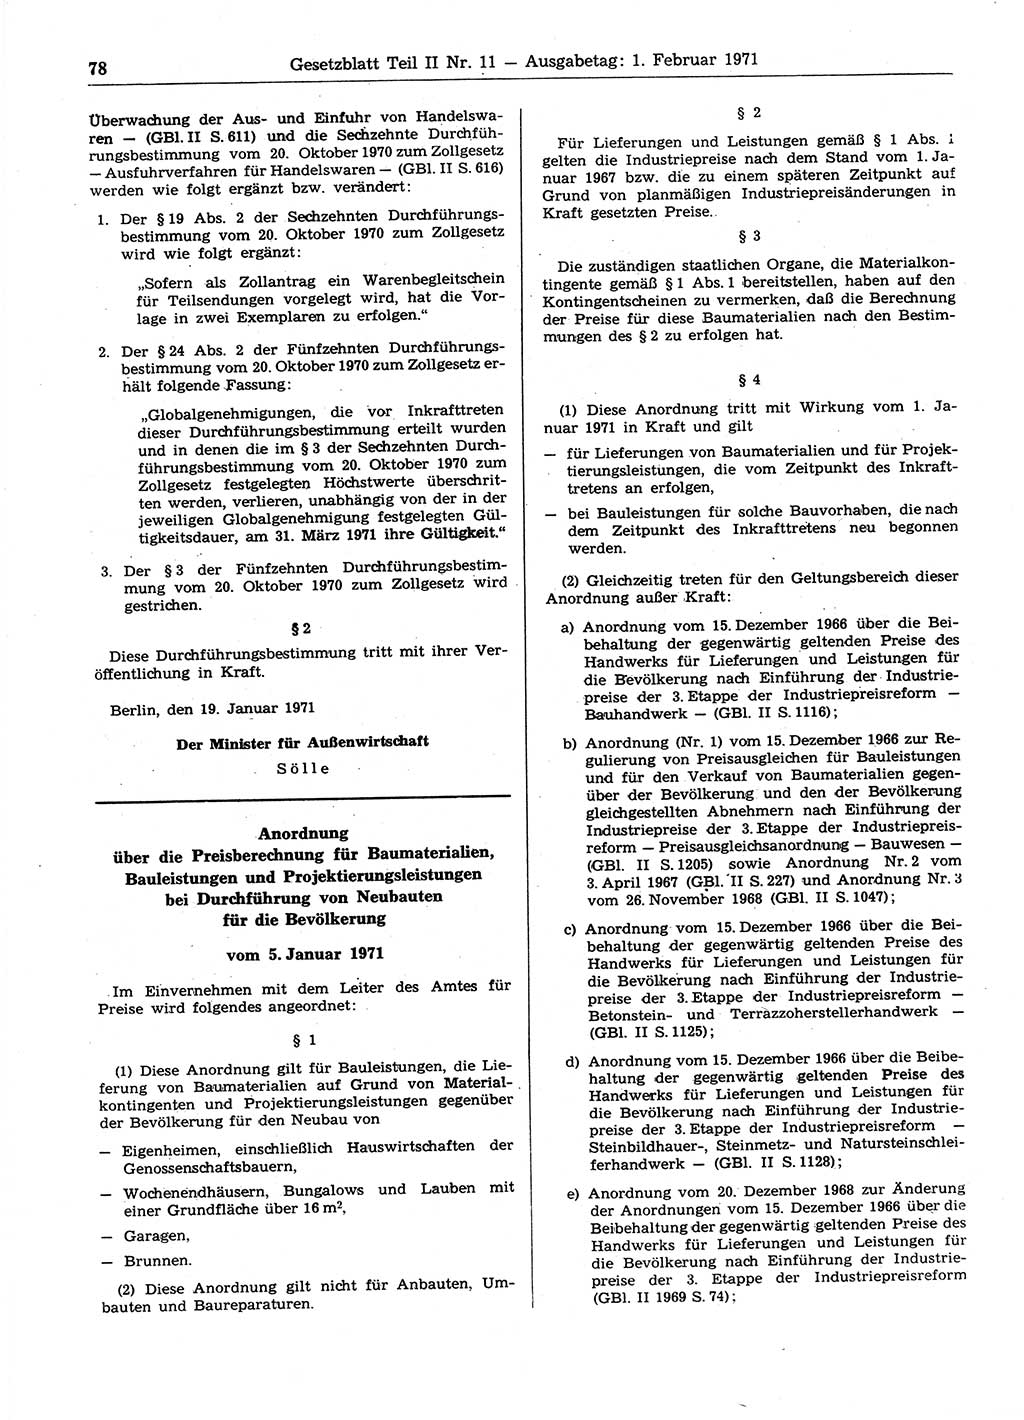 Gesetzblatt (GBl.) der Deutschen Demokratischen Republik (DDR) Teil ⅠⅠ 1971, Seite 78 (GBl. DDR ⅠⅠ 1971, S. 78)